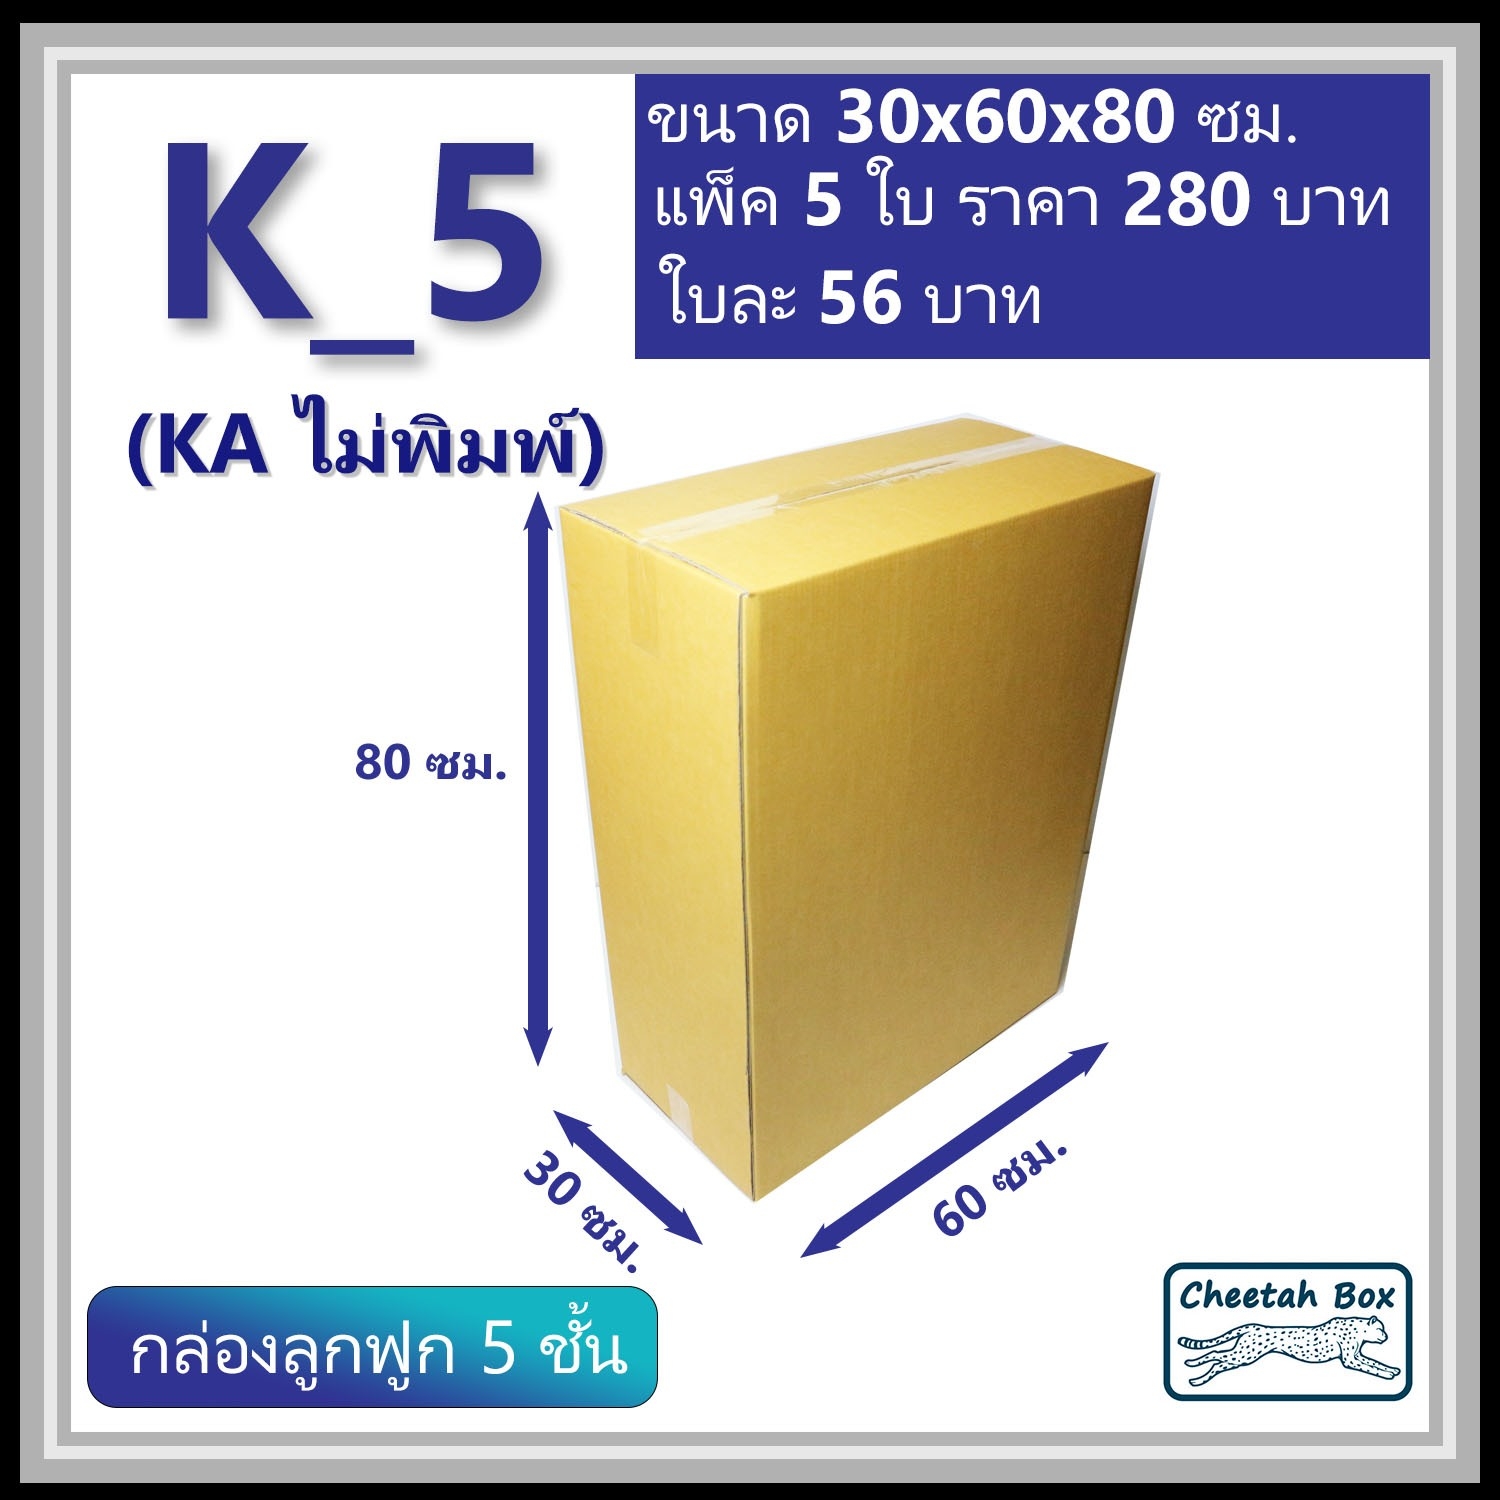 กล่องพัสดุ K_5 (KA 5 ชั้น) ไม่พิมพ์ (Post Box) ลูกฟูก 5 ชั้น ขนาด 30W x 60L x 80H cm.